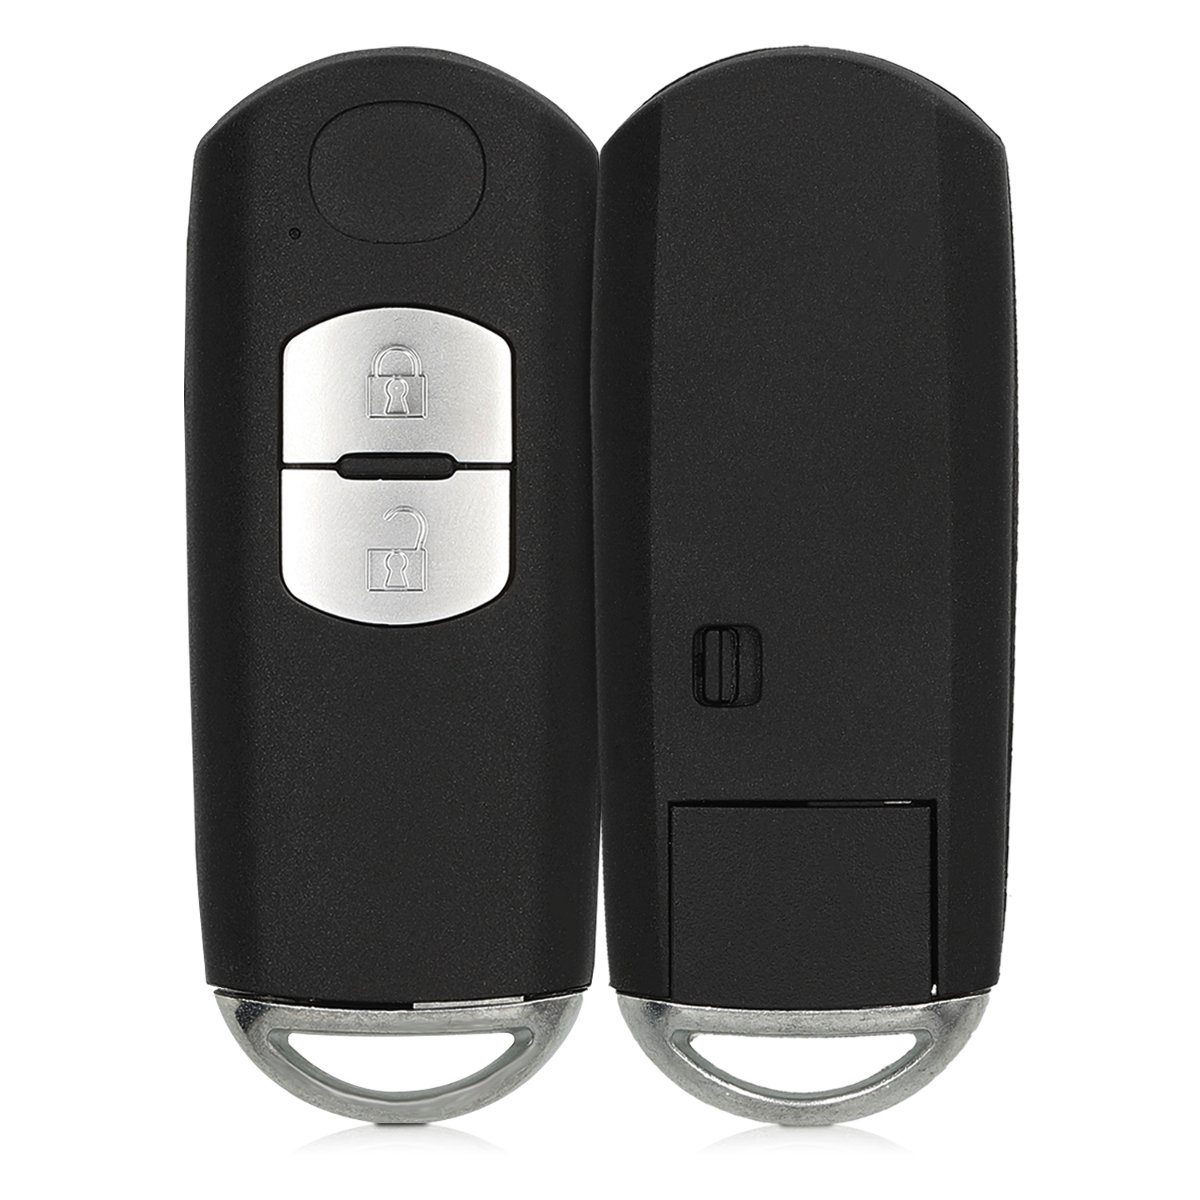 Auto Autoschlüssel, Elektronik Schlüsseltasche Mazda Schlüsselgehäuse Gehäuse - kwmobile Batterien Transponder für ohne